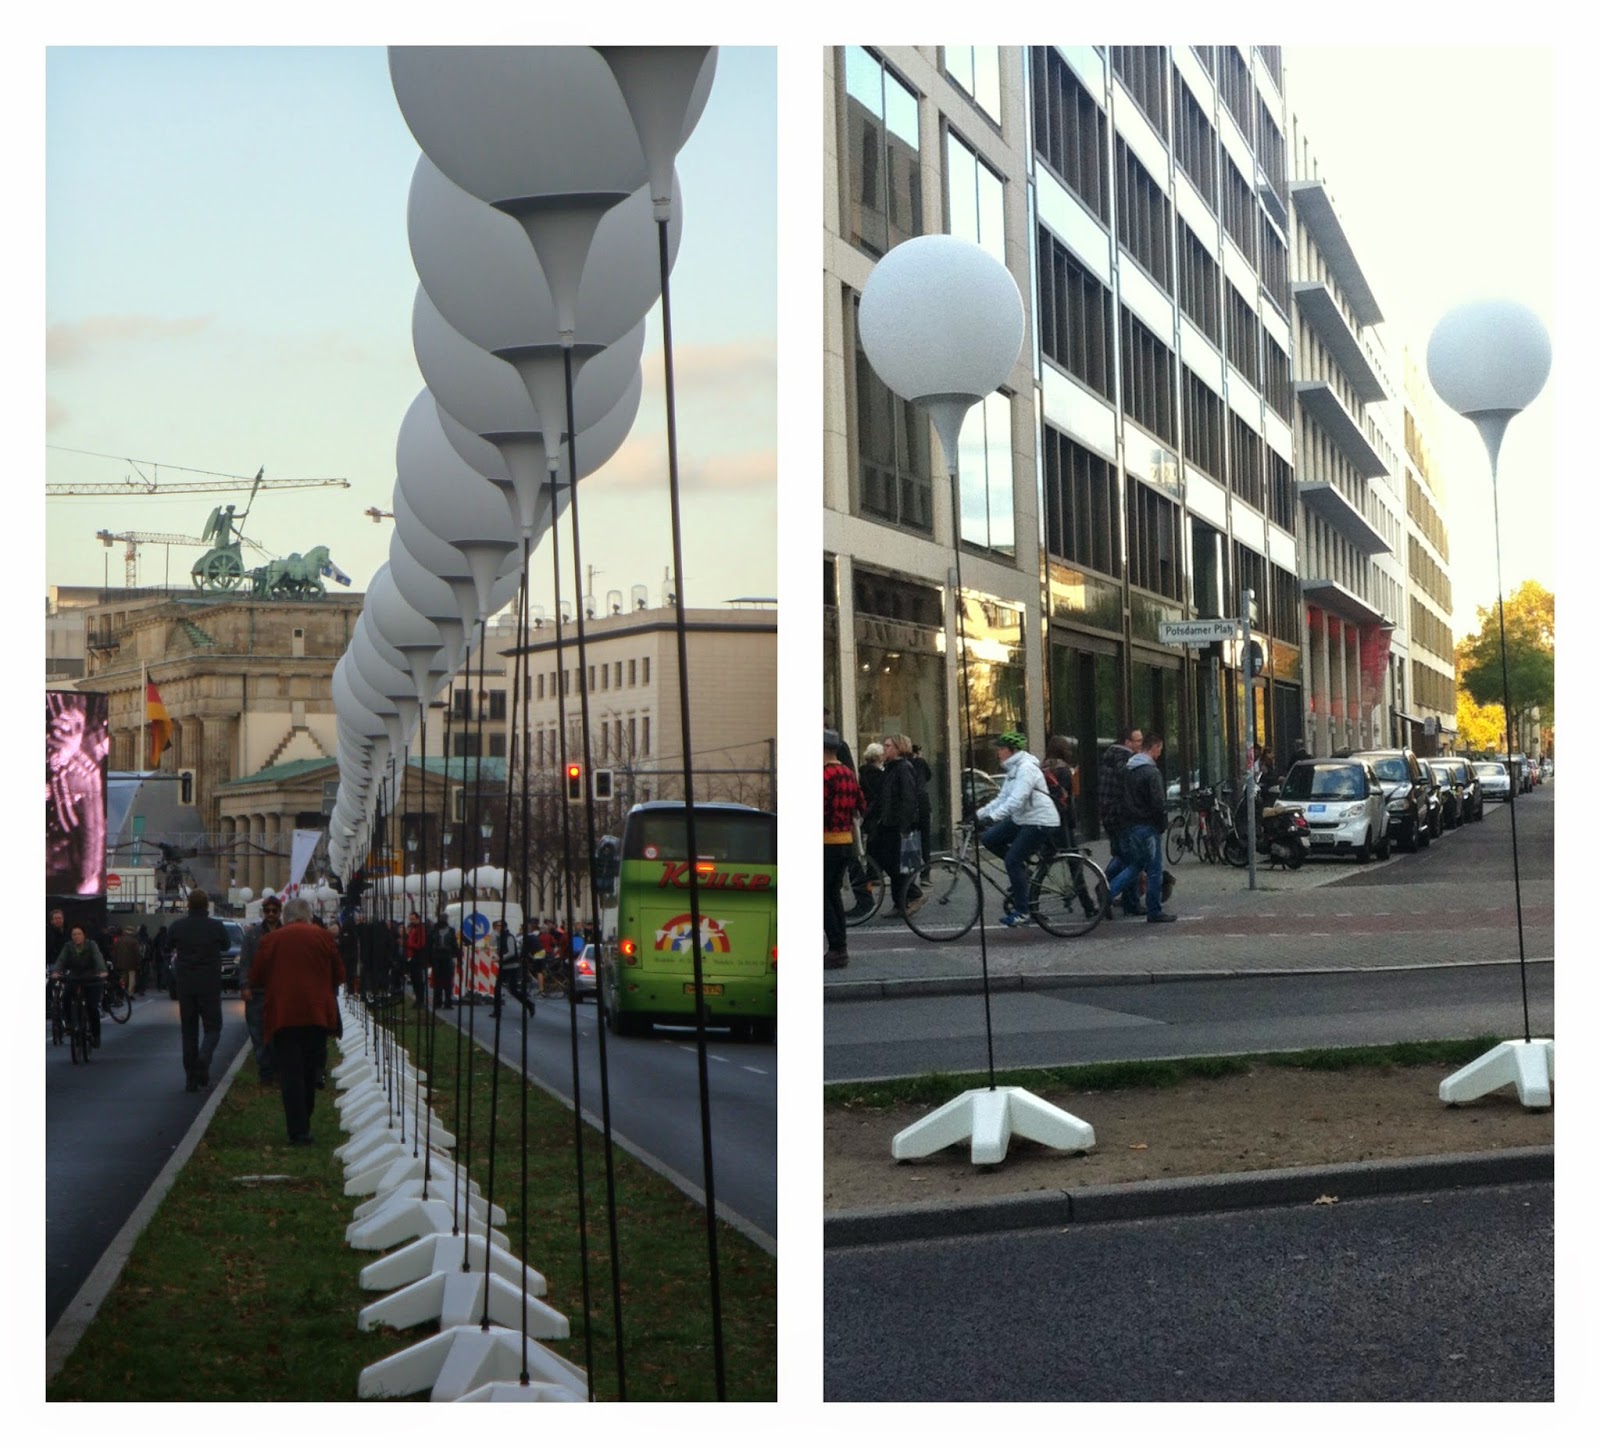 Lichtgrenze Berlin 2014 - Fronteira de luz em Berlim - comemoração dos 25 anos da queda do Muro de Berlim